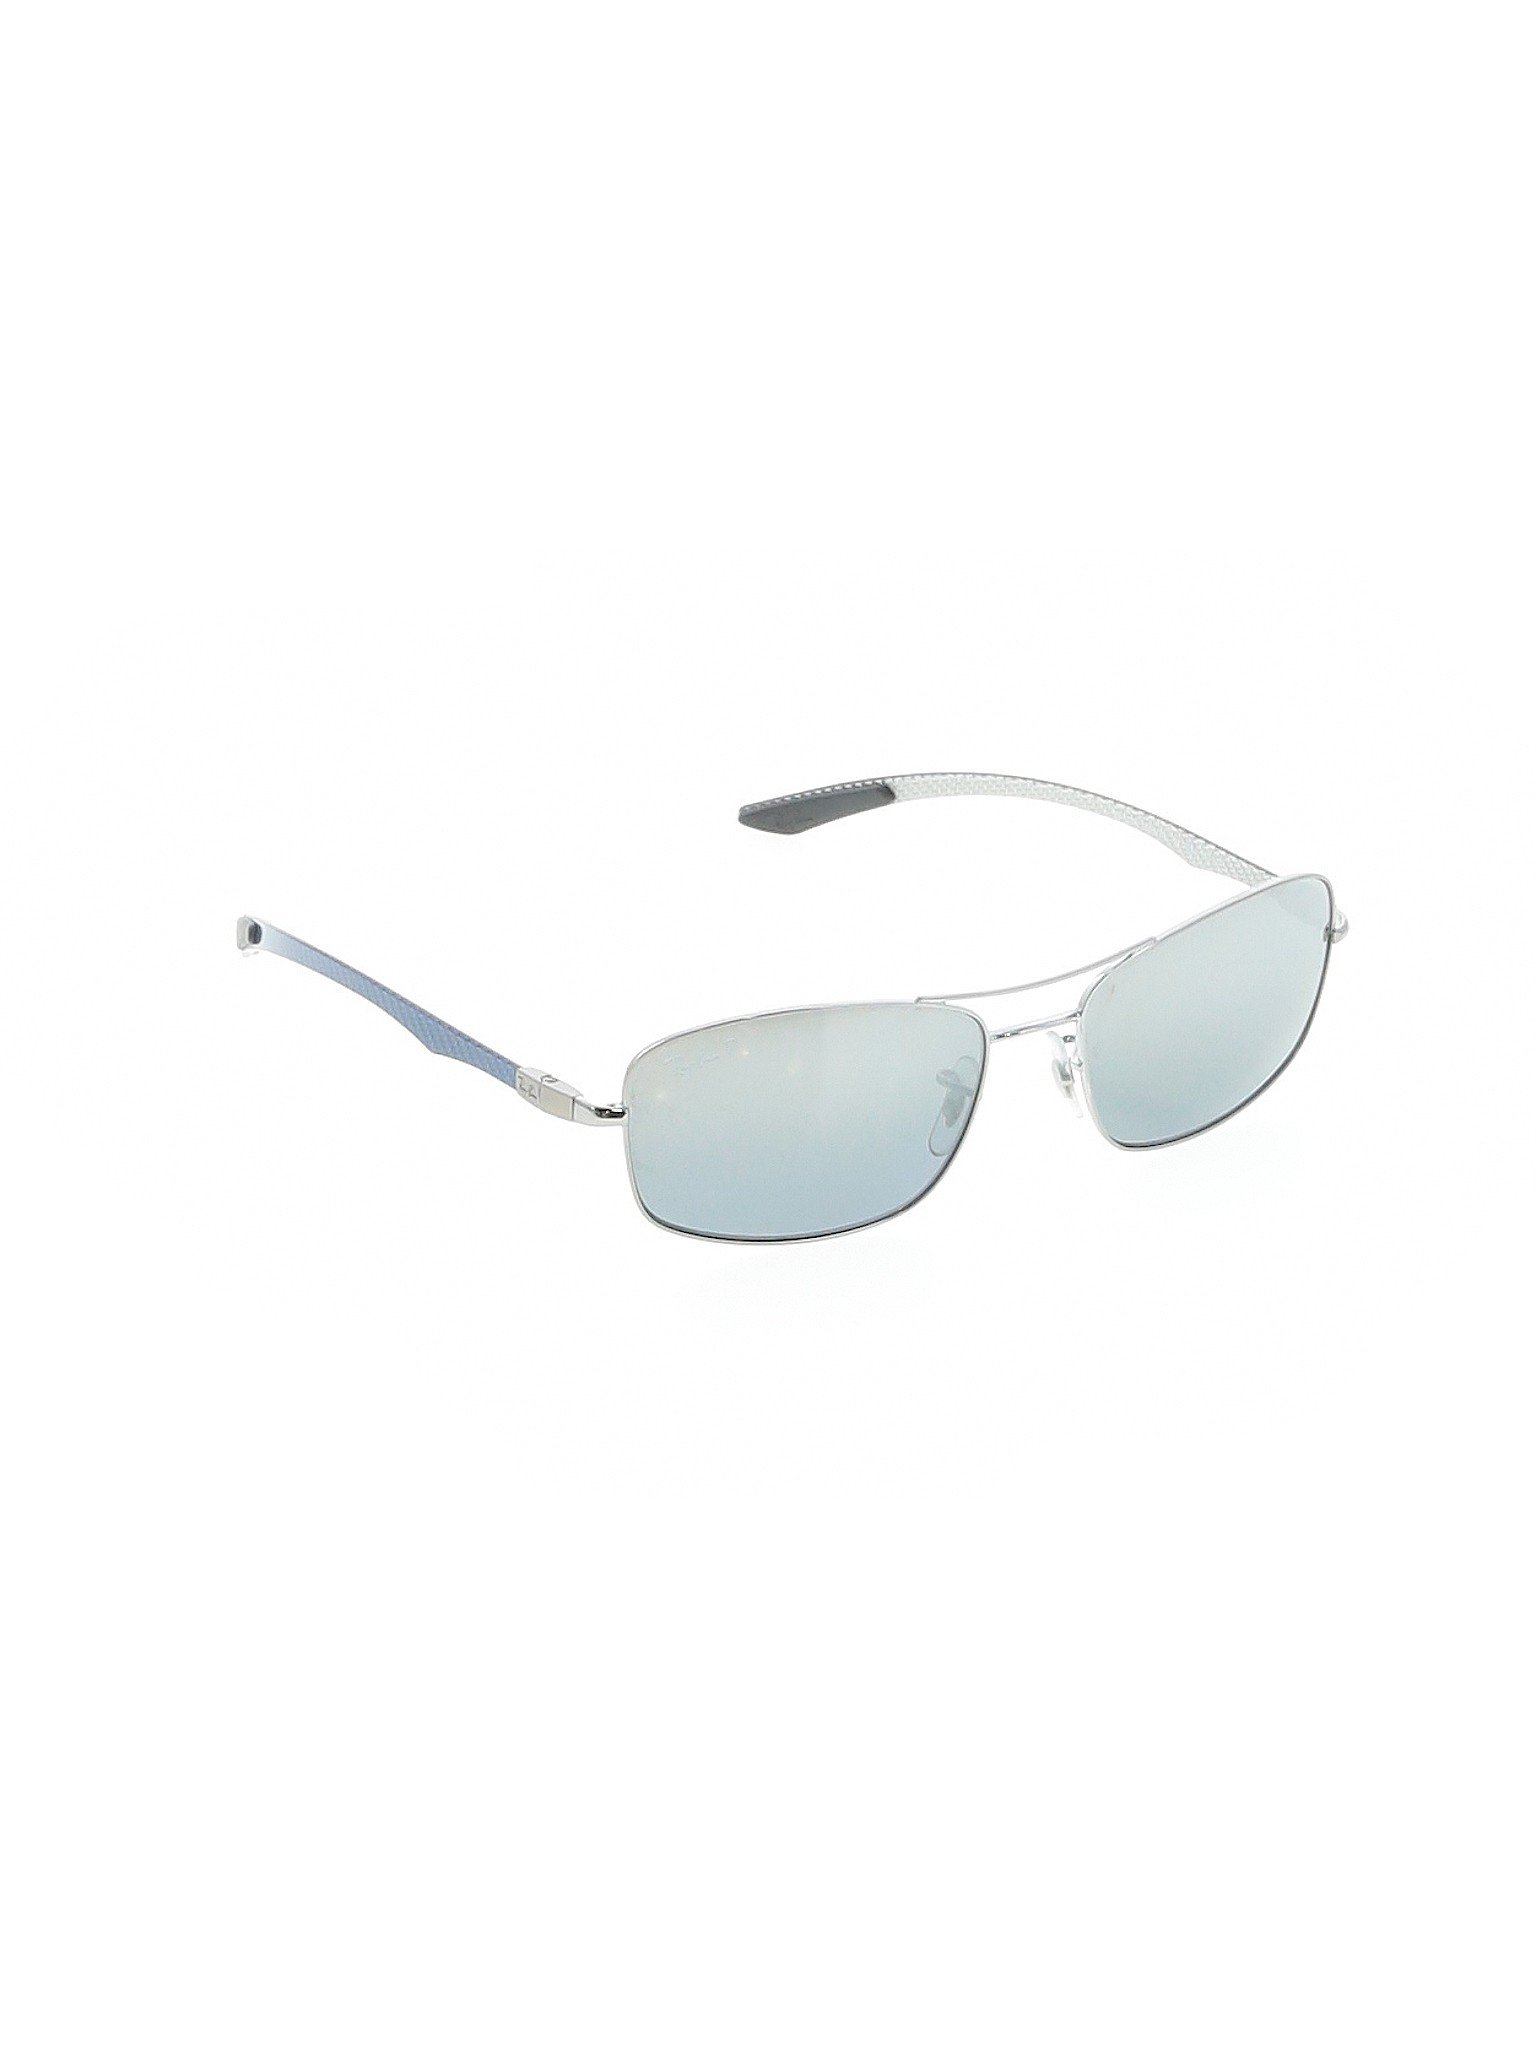 Ray Ban Aviator Sunglasses Size Chart